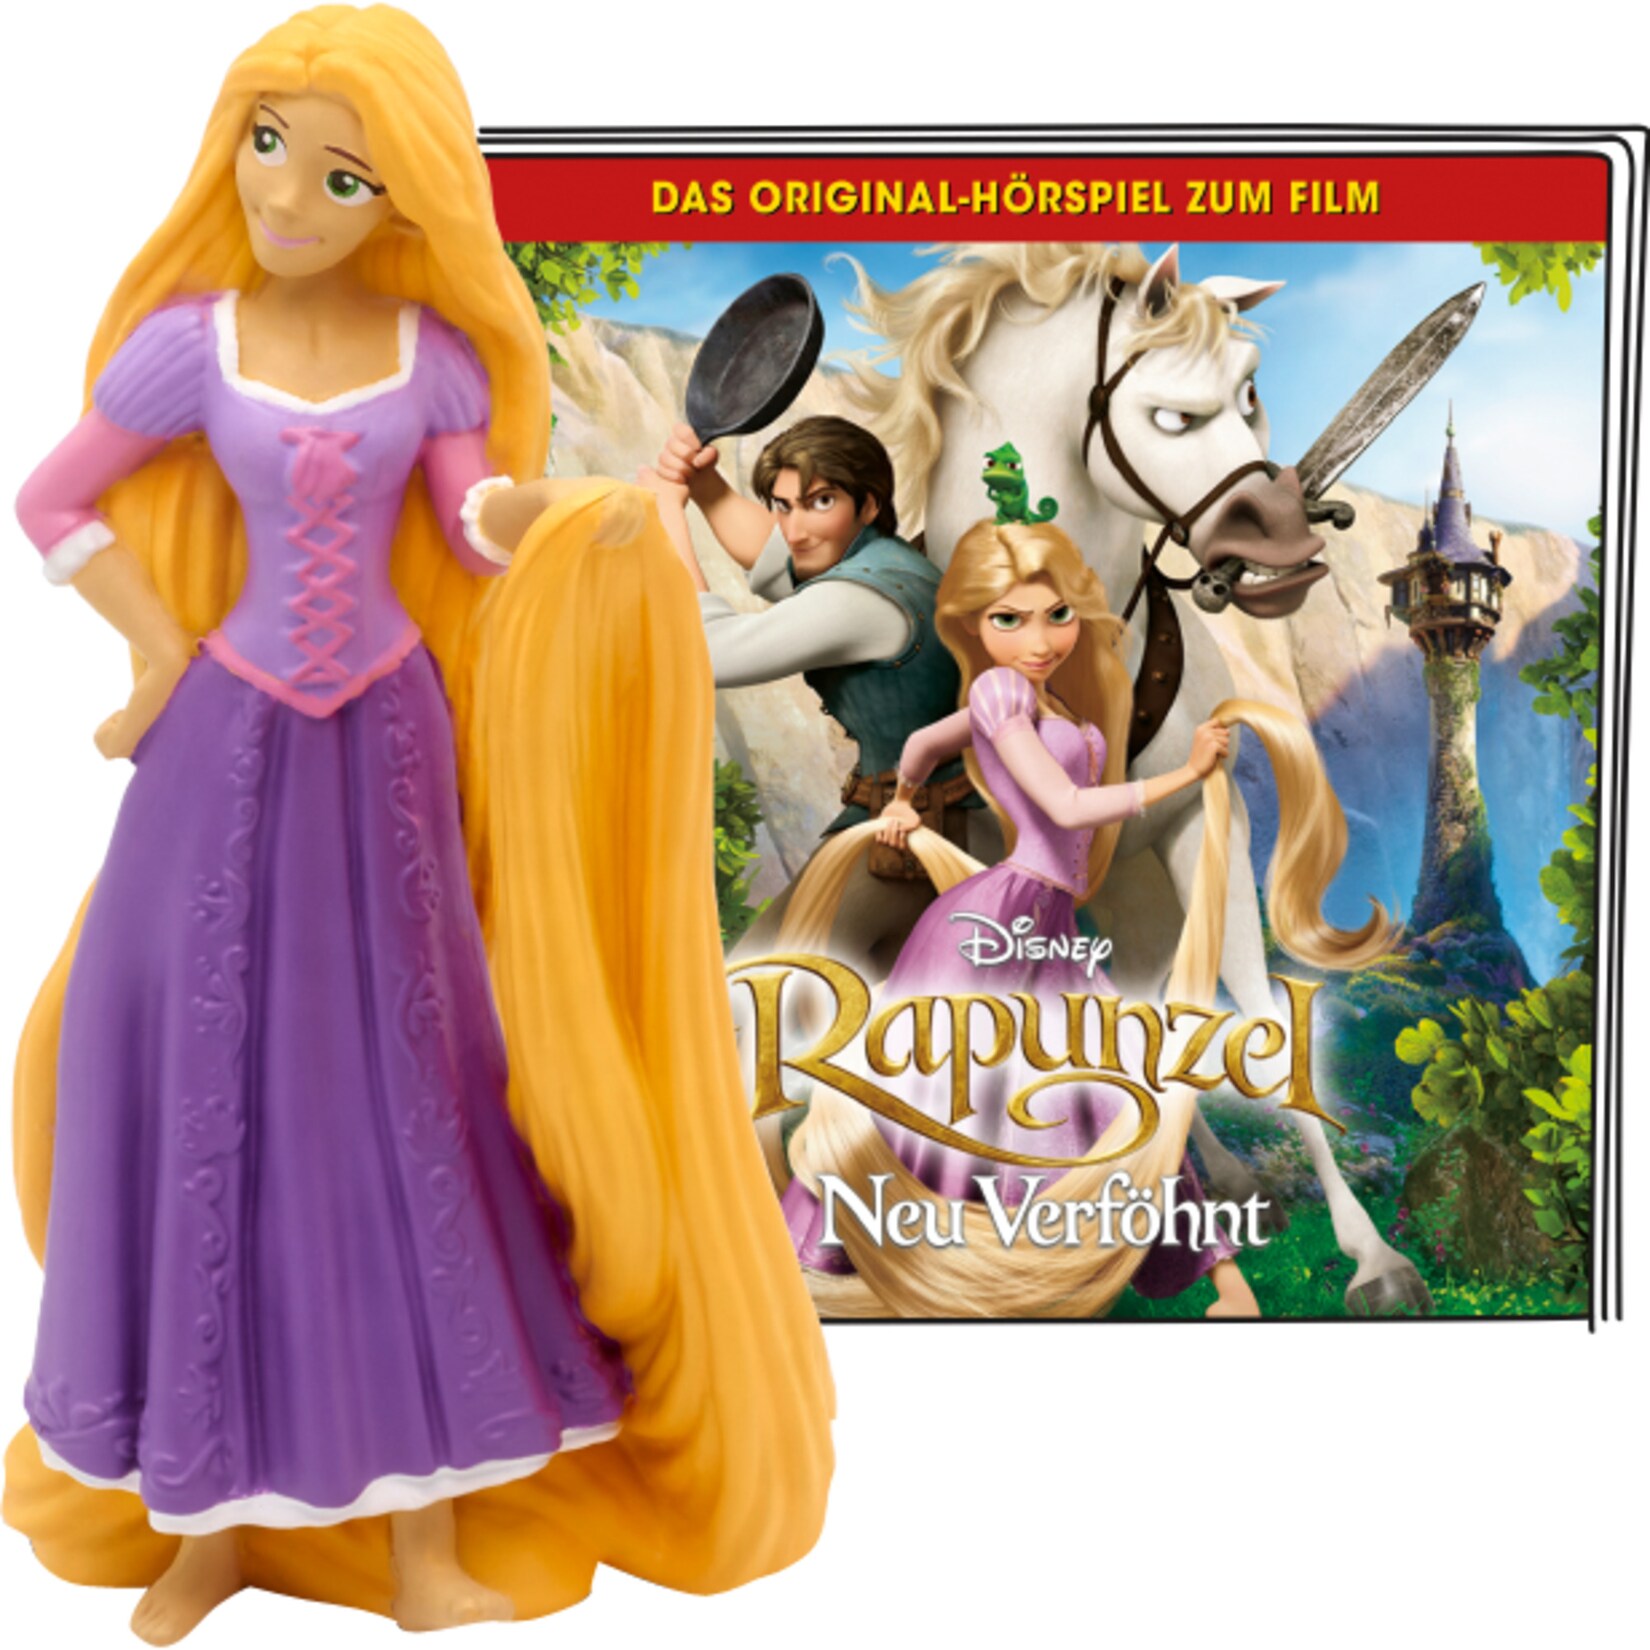 Tonies Spielfigur Disney - Rapunzel - Neu verföhnt